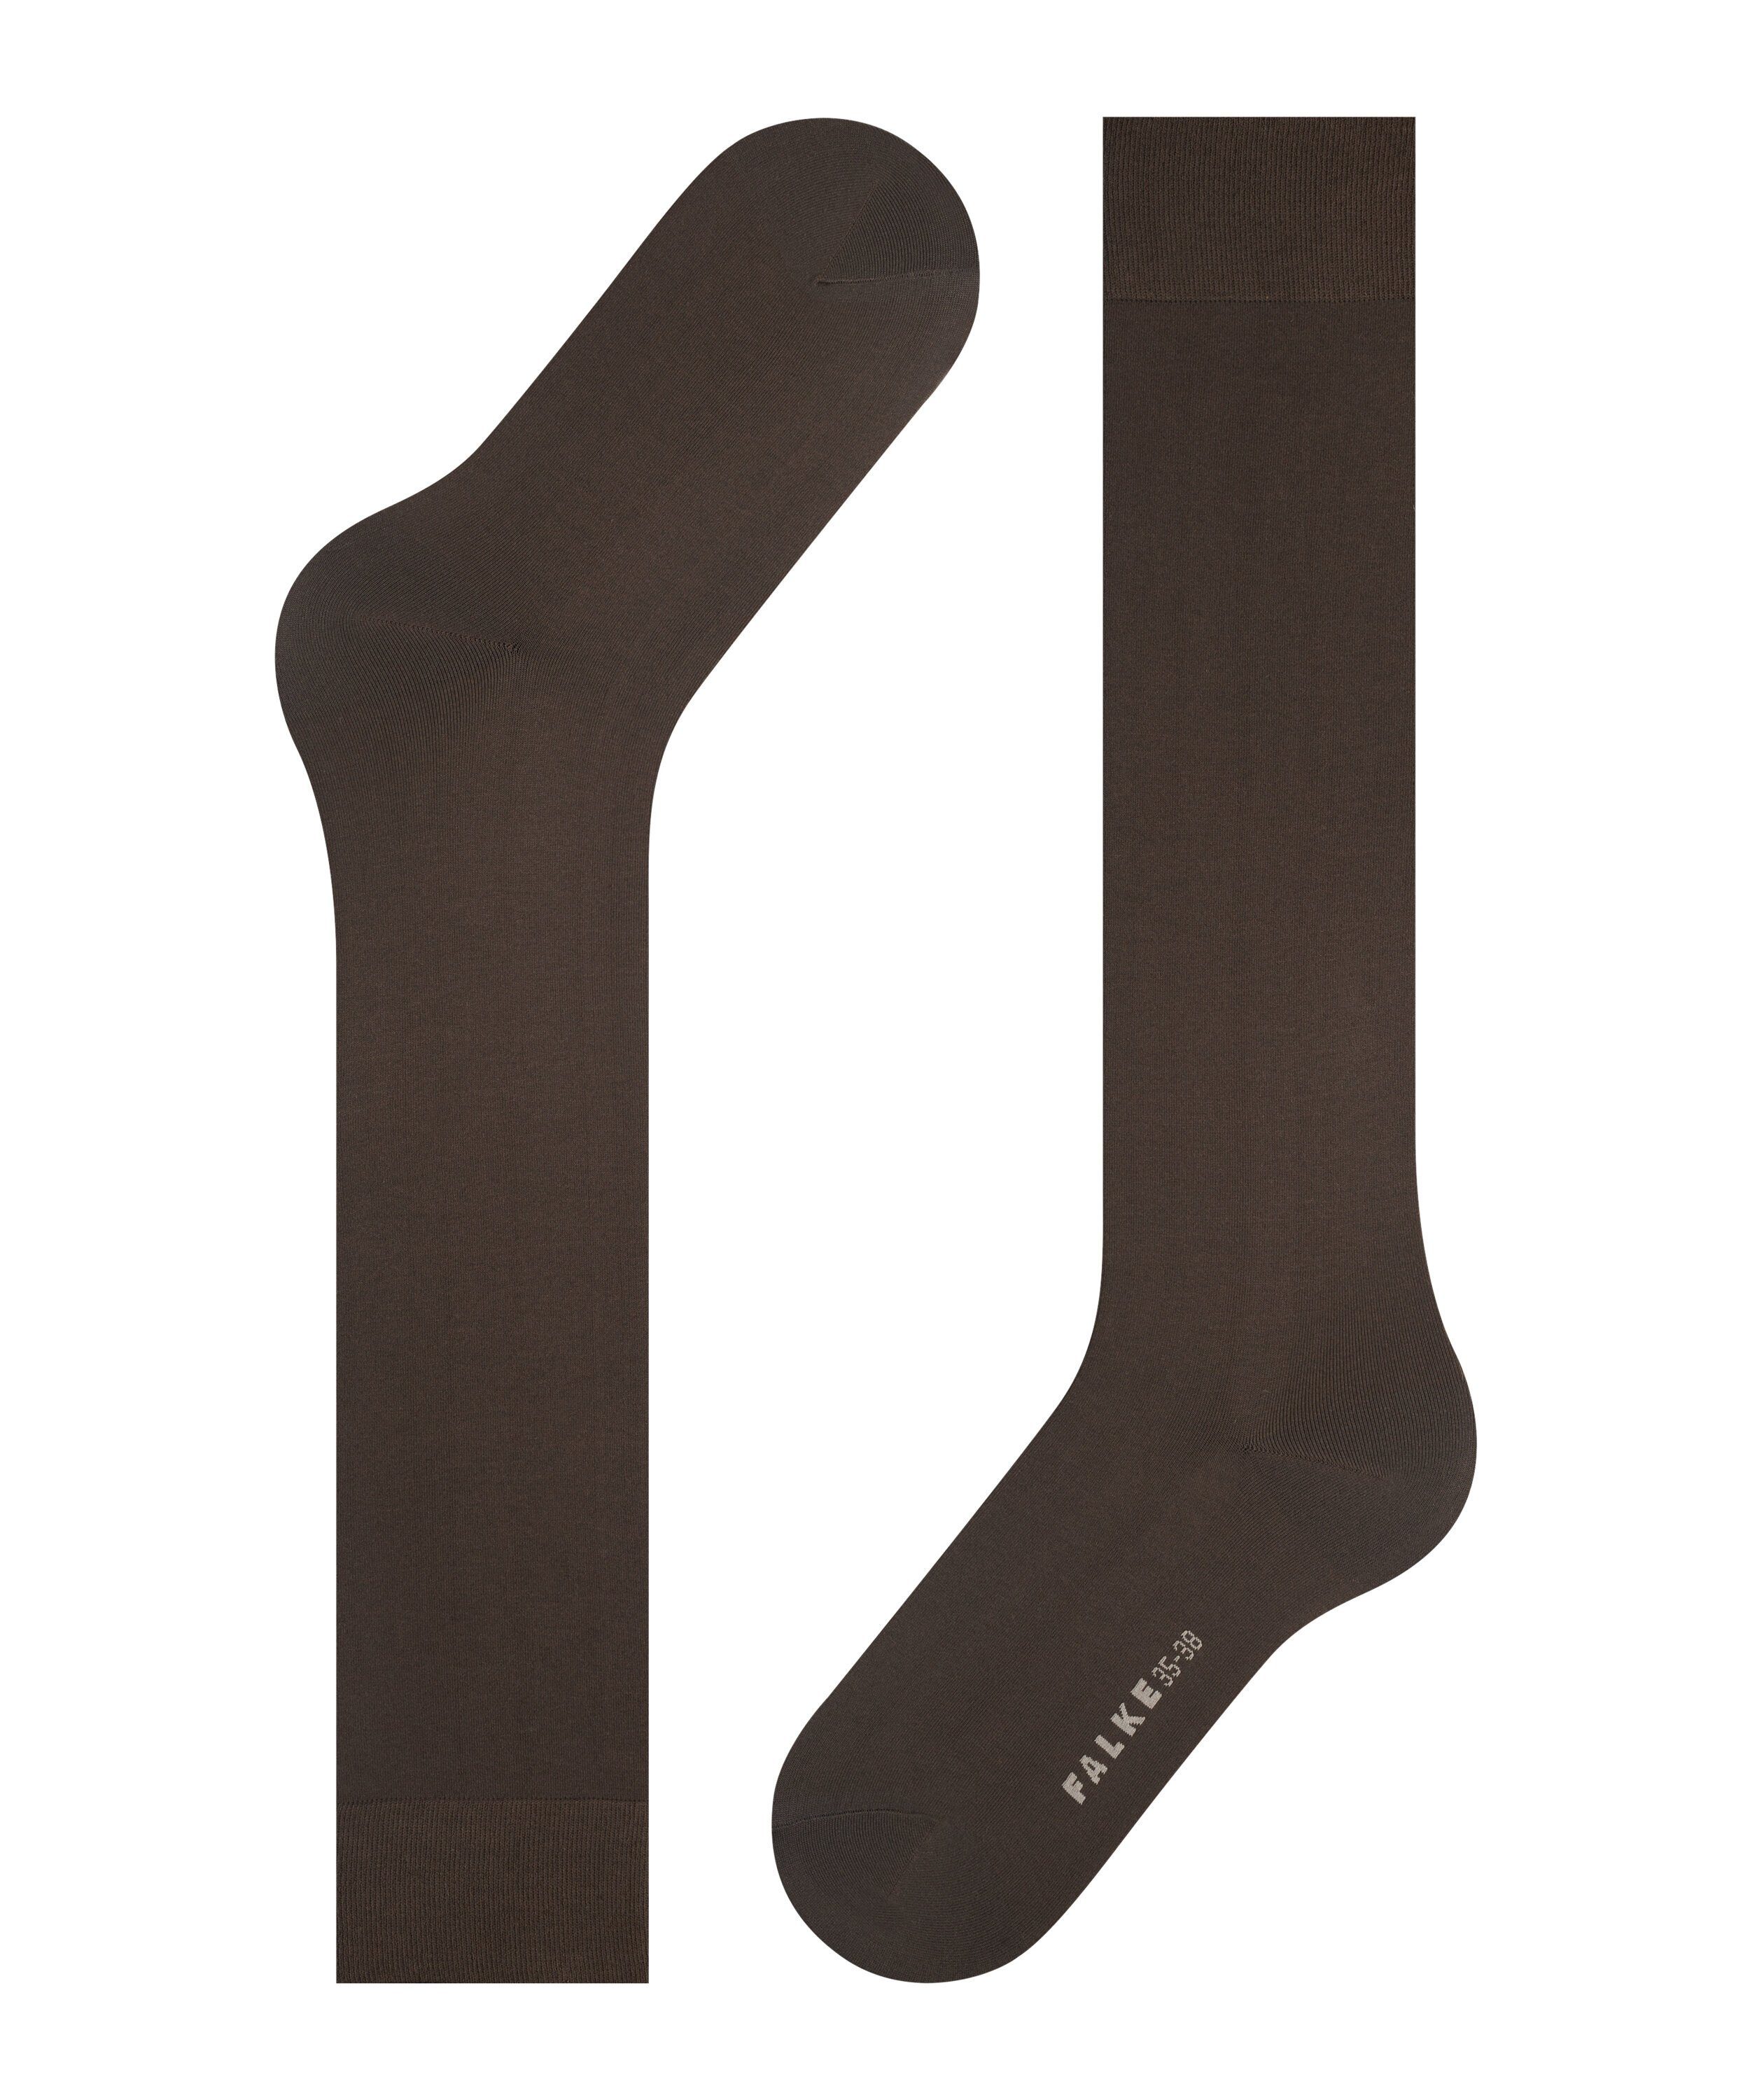 sehr brown (5233) dark Maschenbild FALKE mit Cotton Touch feinem (1-Paar) Kniestrümpfe